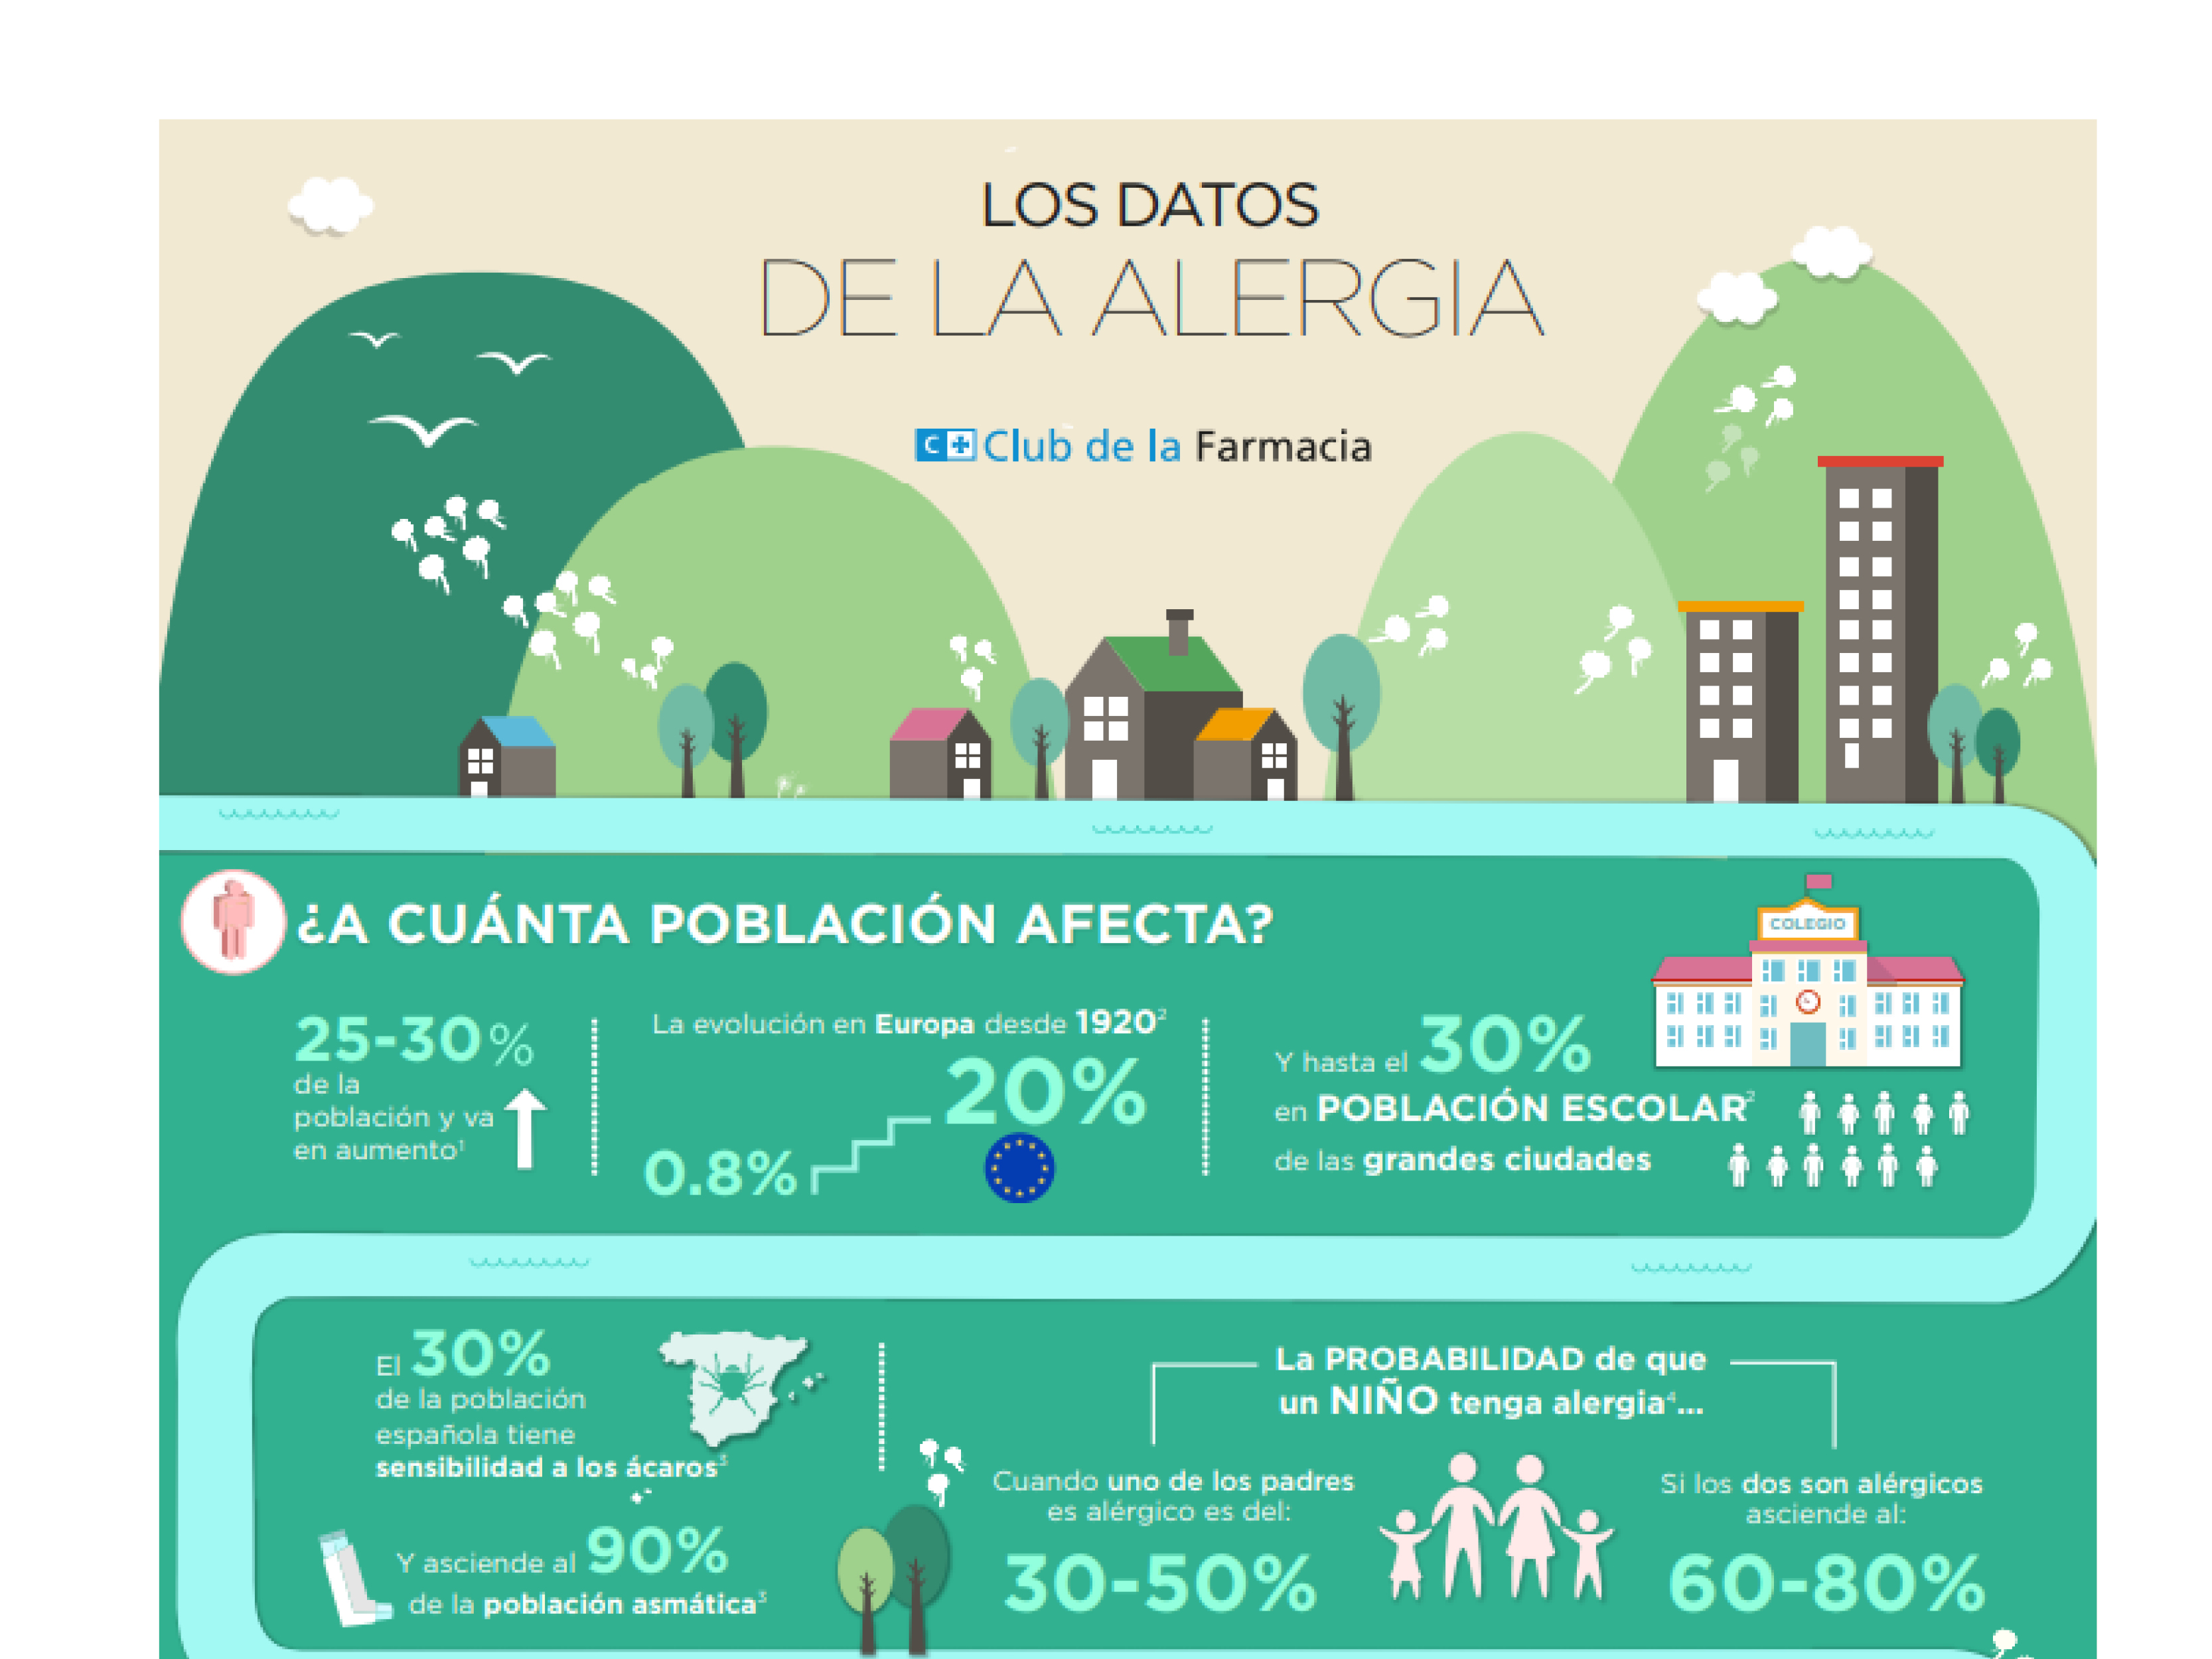 Los datos de la alergia2